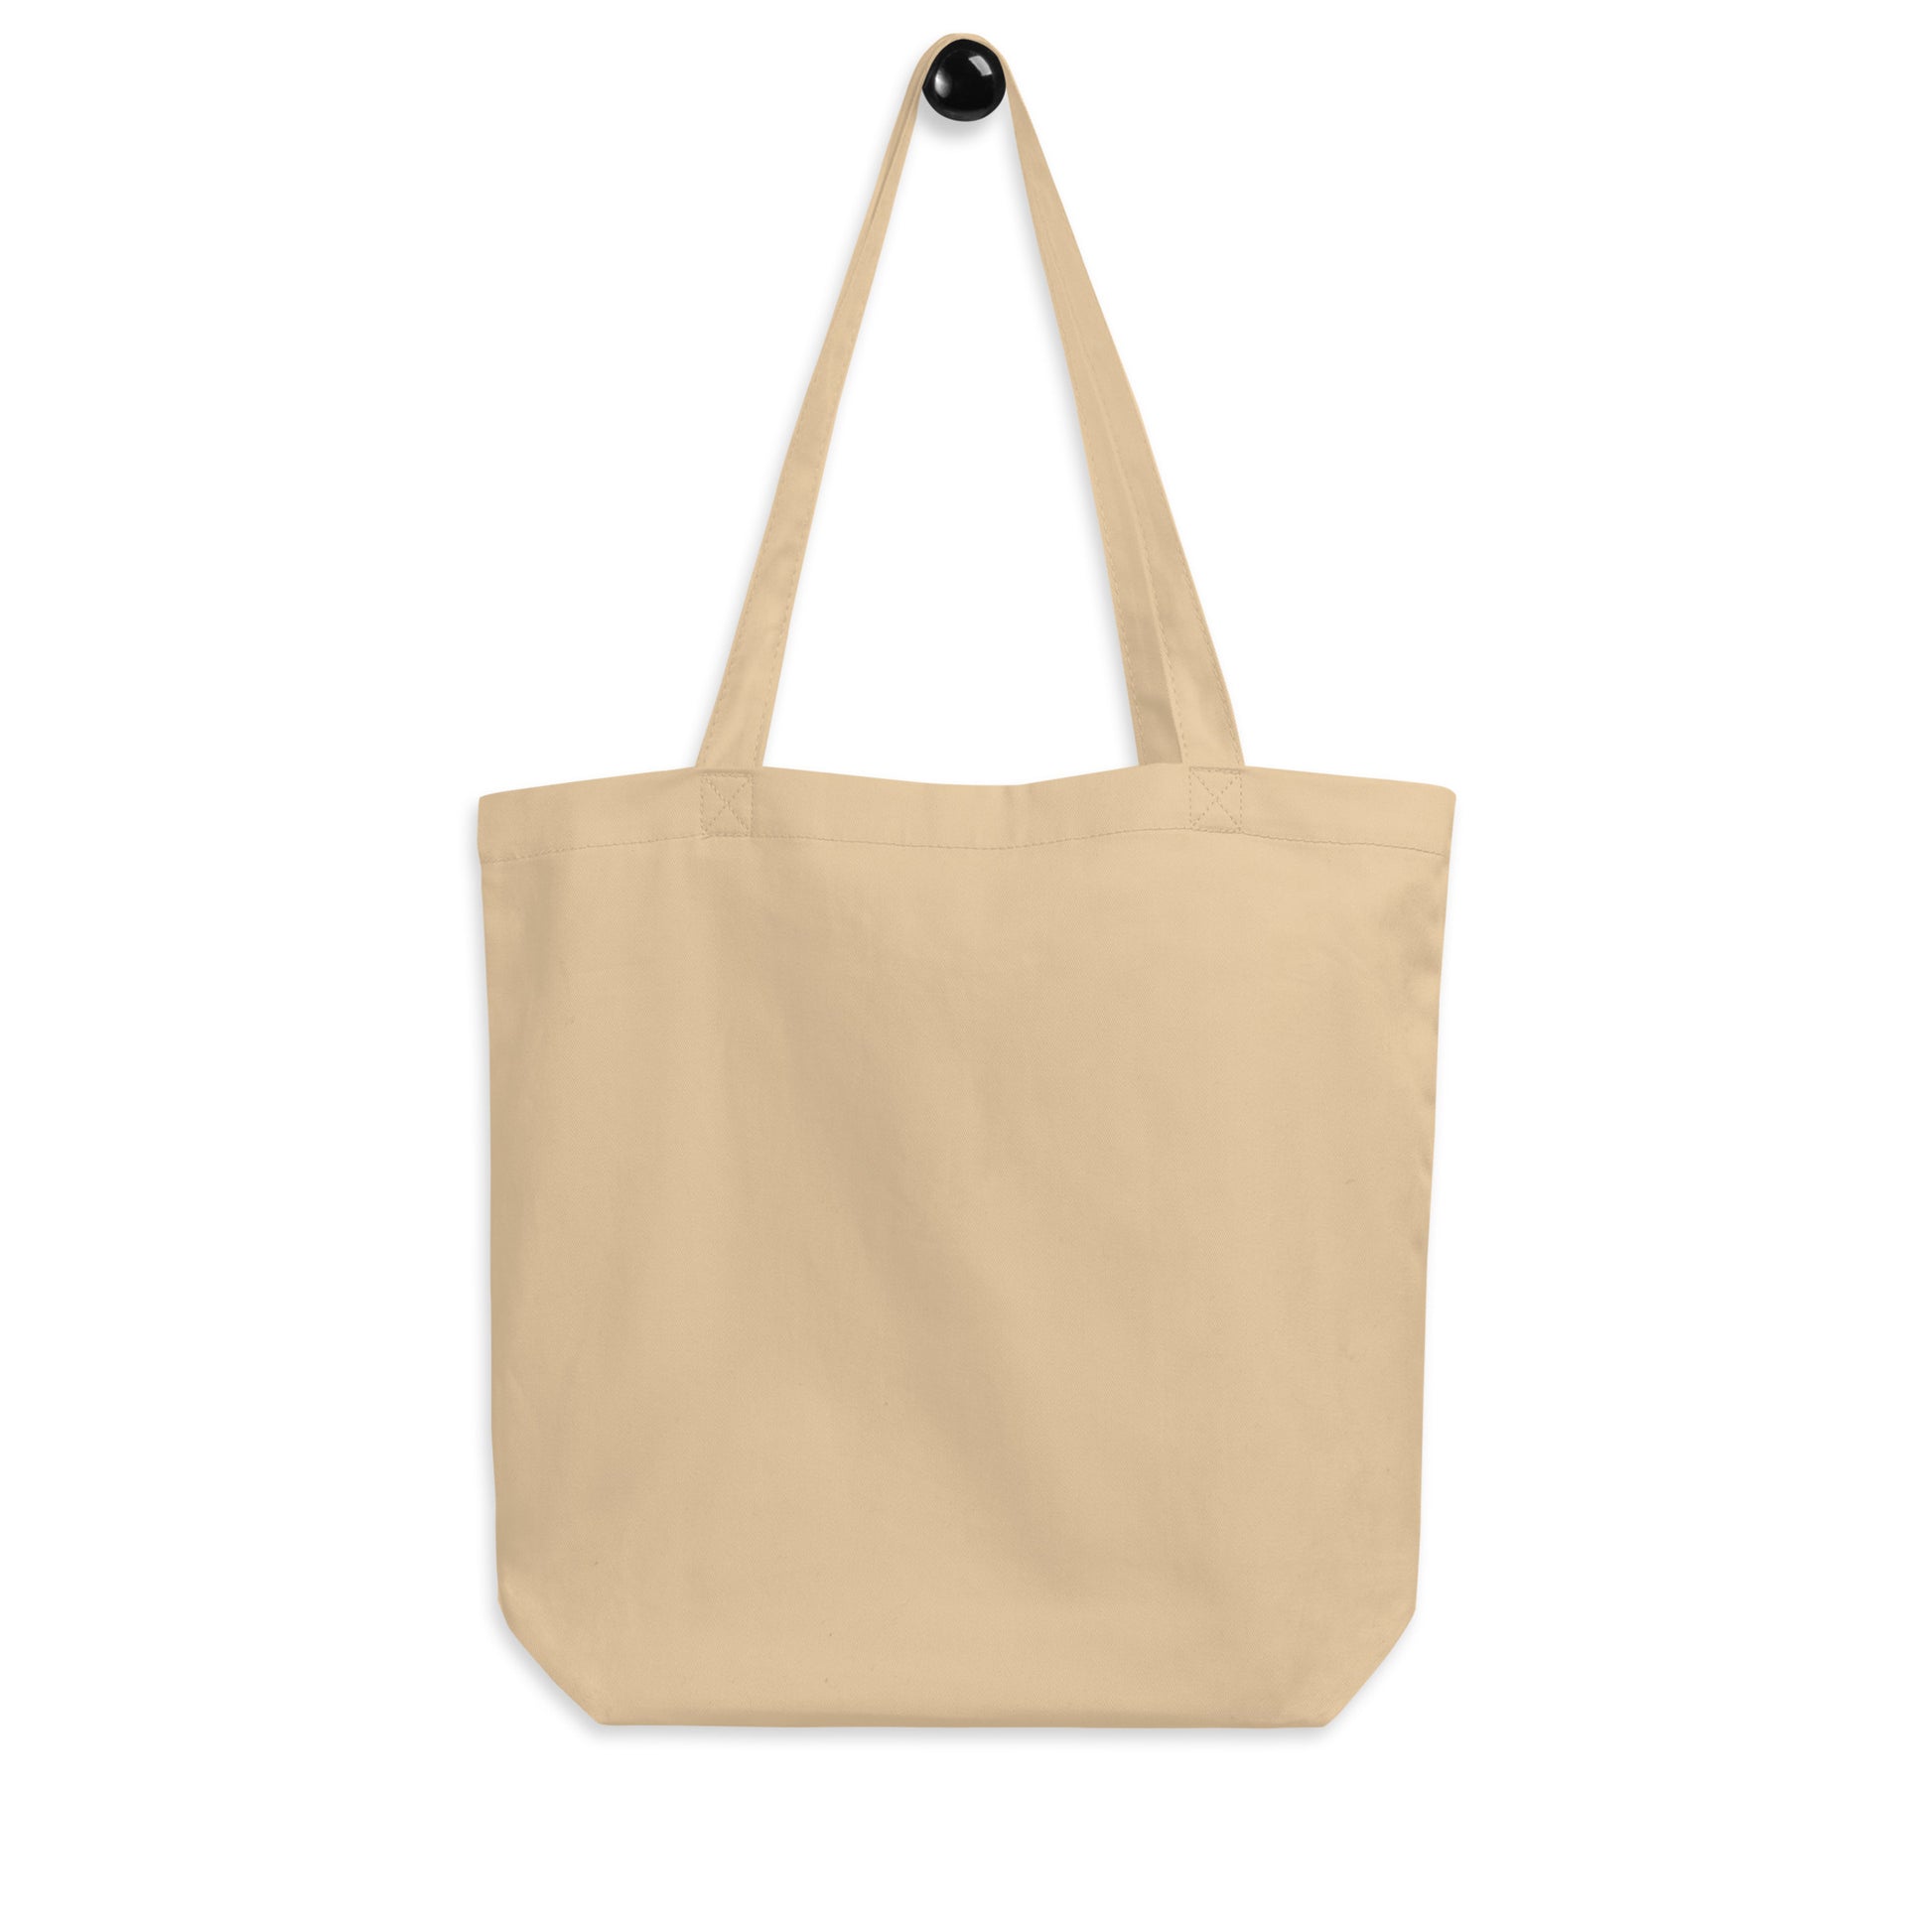 Cool Travel Gift Organic Tote Bag - Viking Blue • ICN Seoul • YHM Designs - Image 05